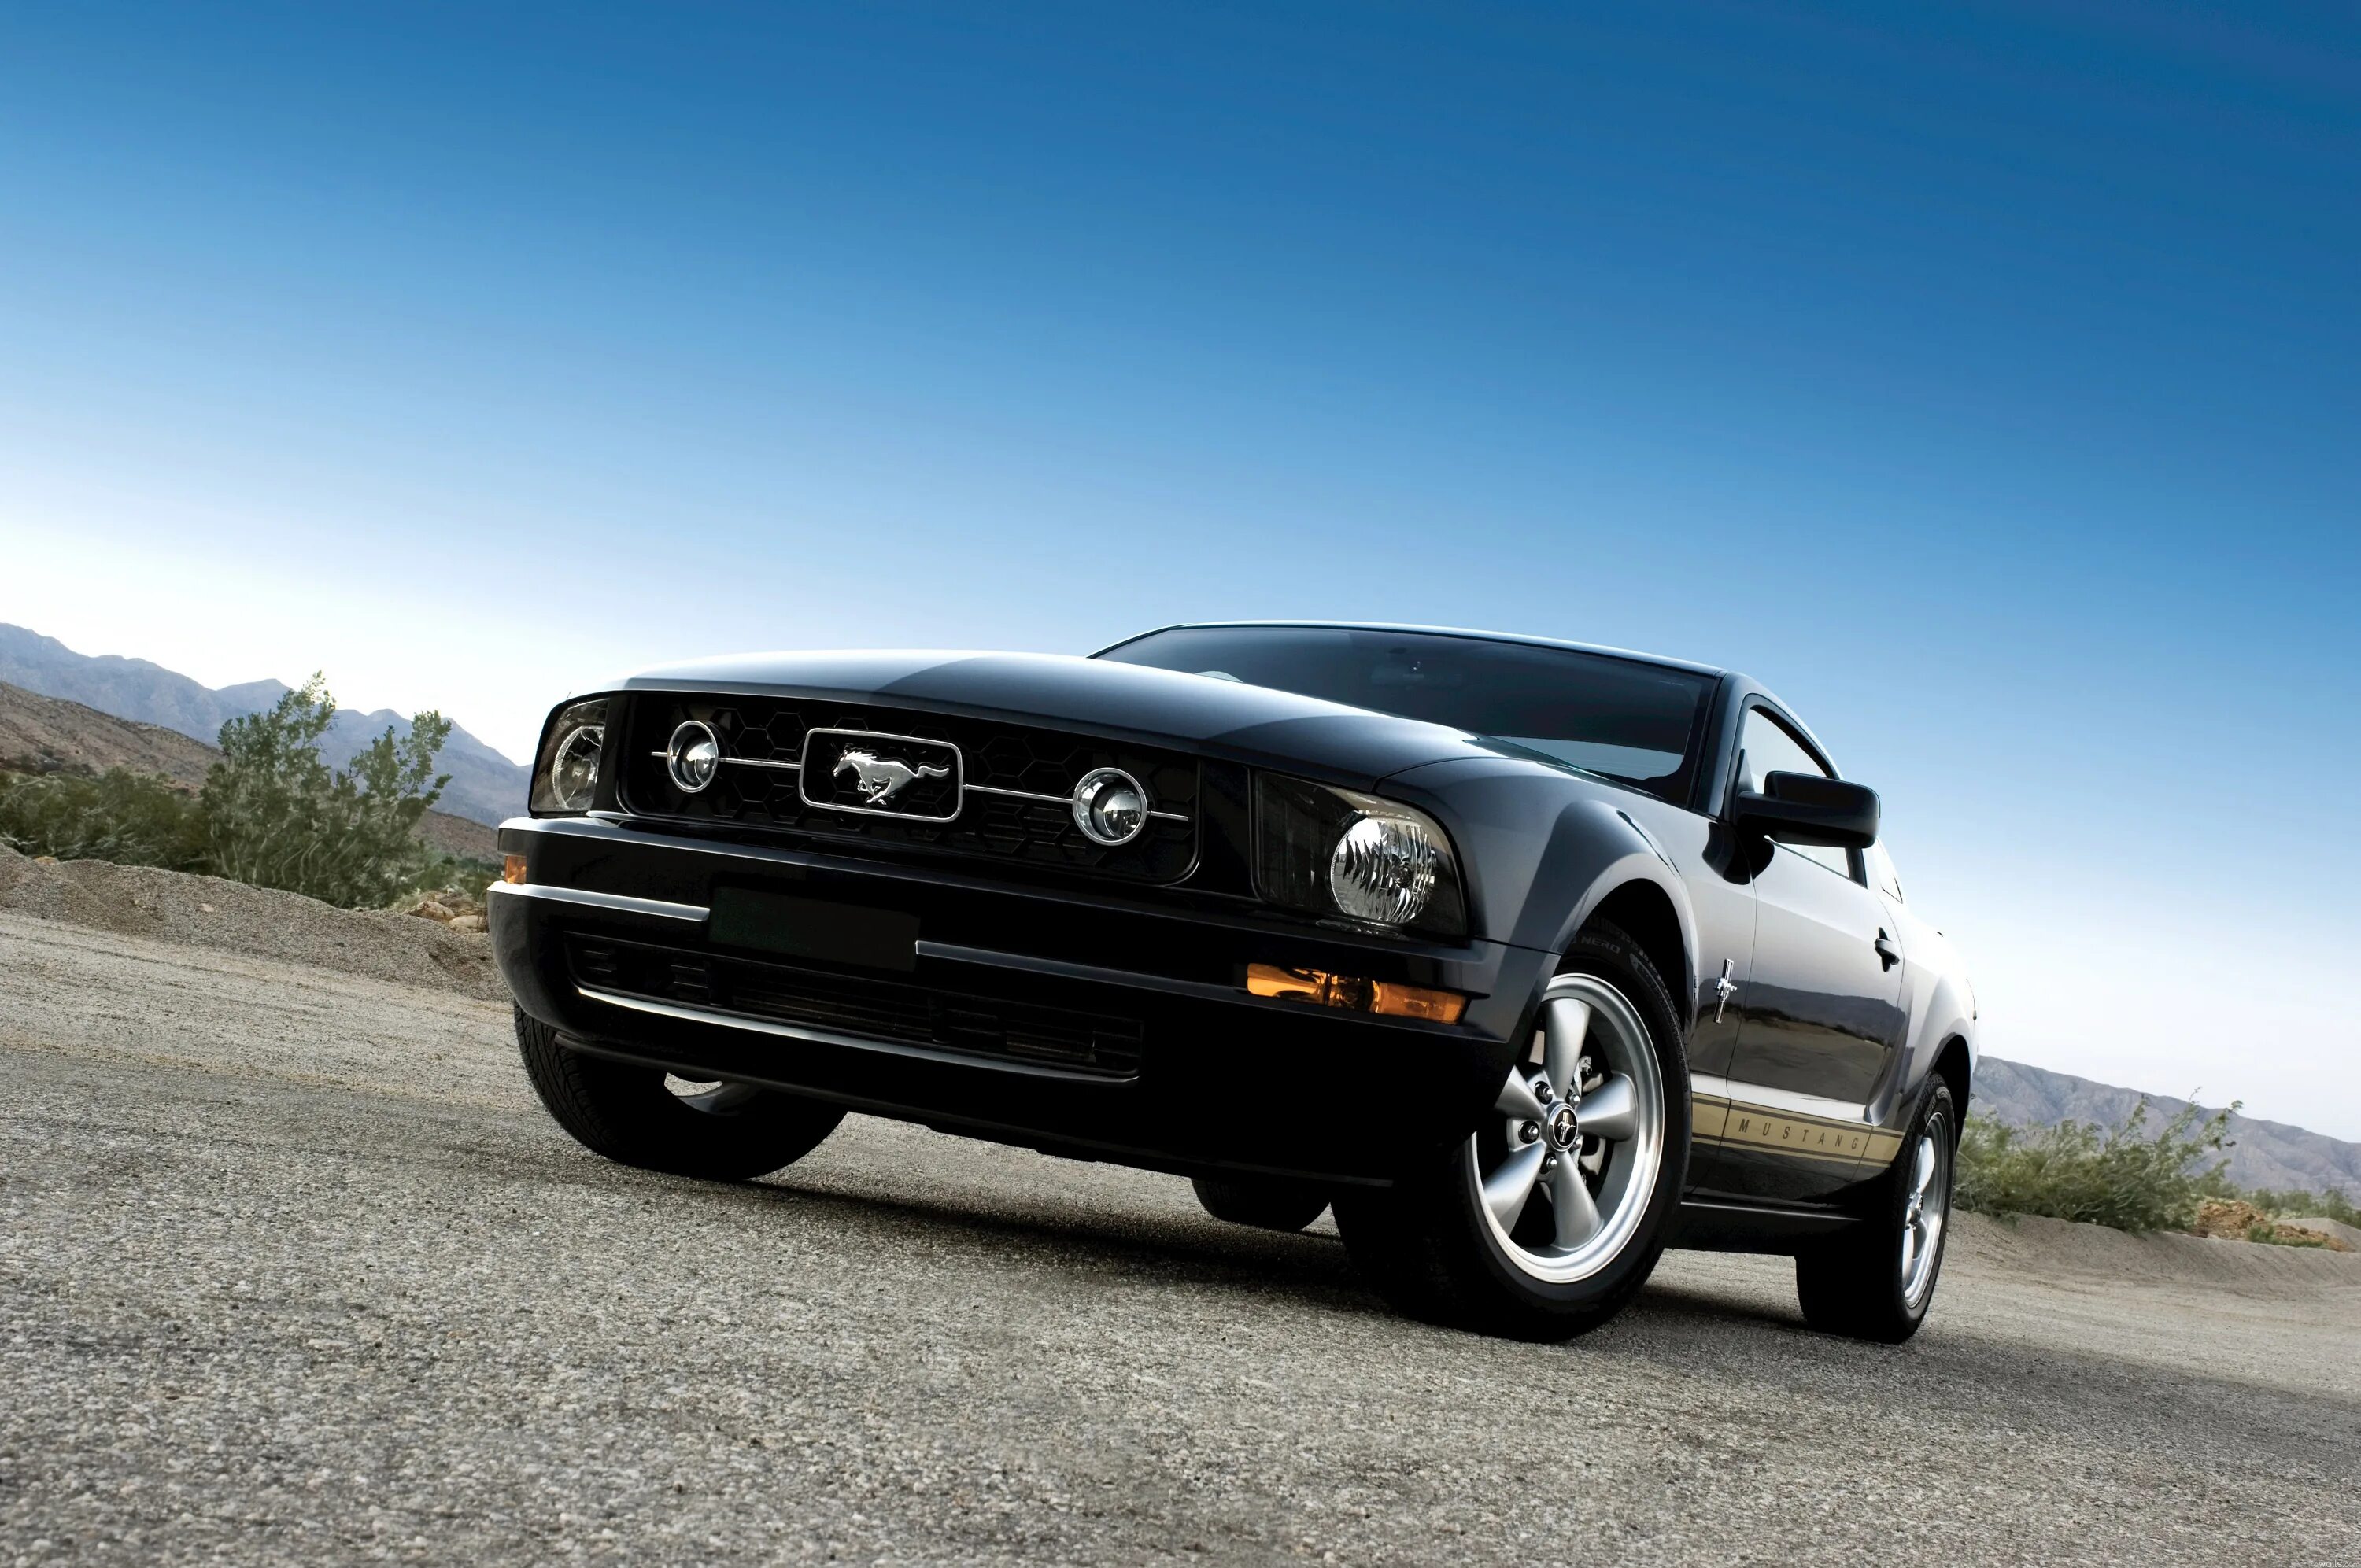 Форд Мустанг 2005. Ford Mustang 2005 Black. Форд Мустанг 8. Форд Мустанг 2005 черный.